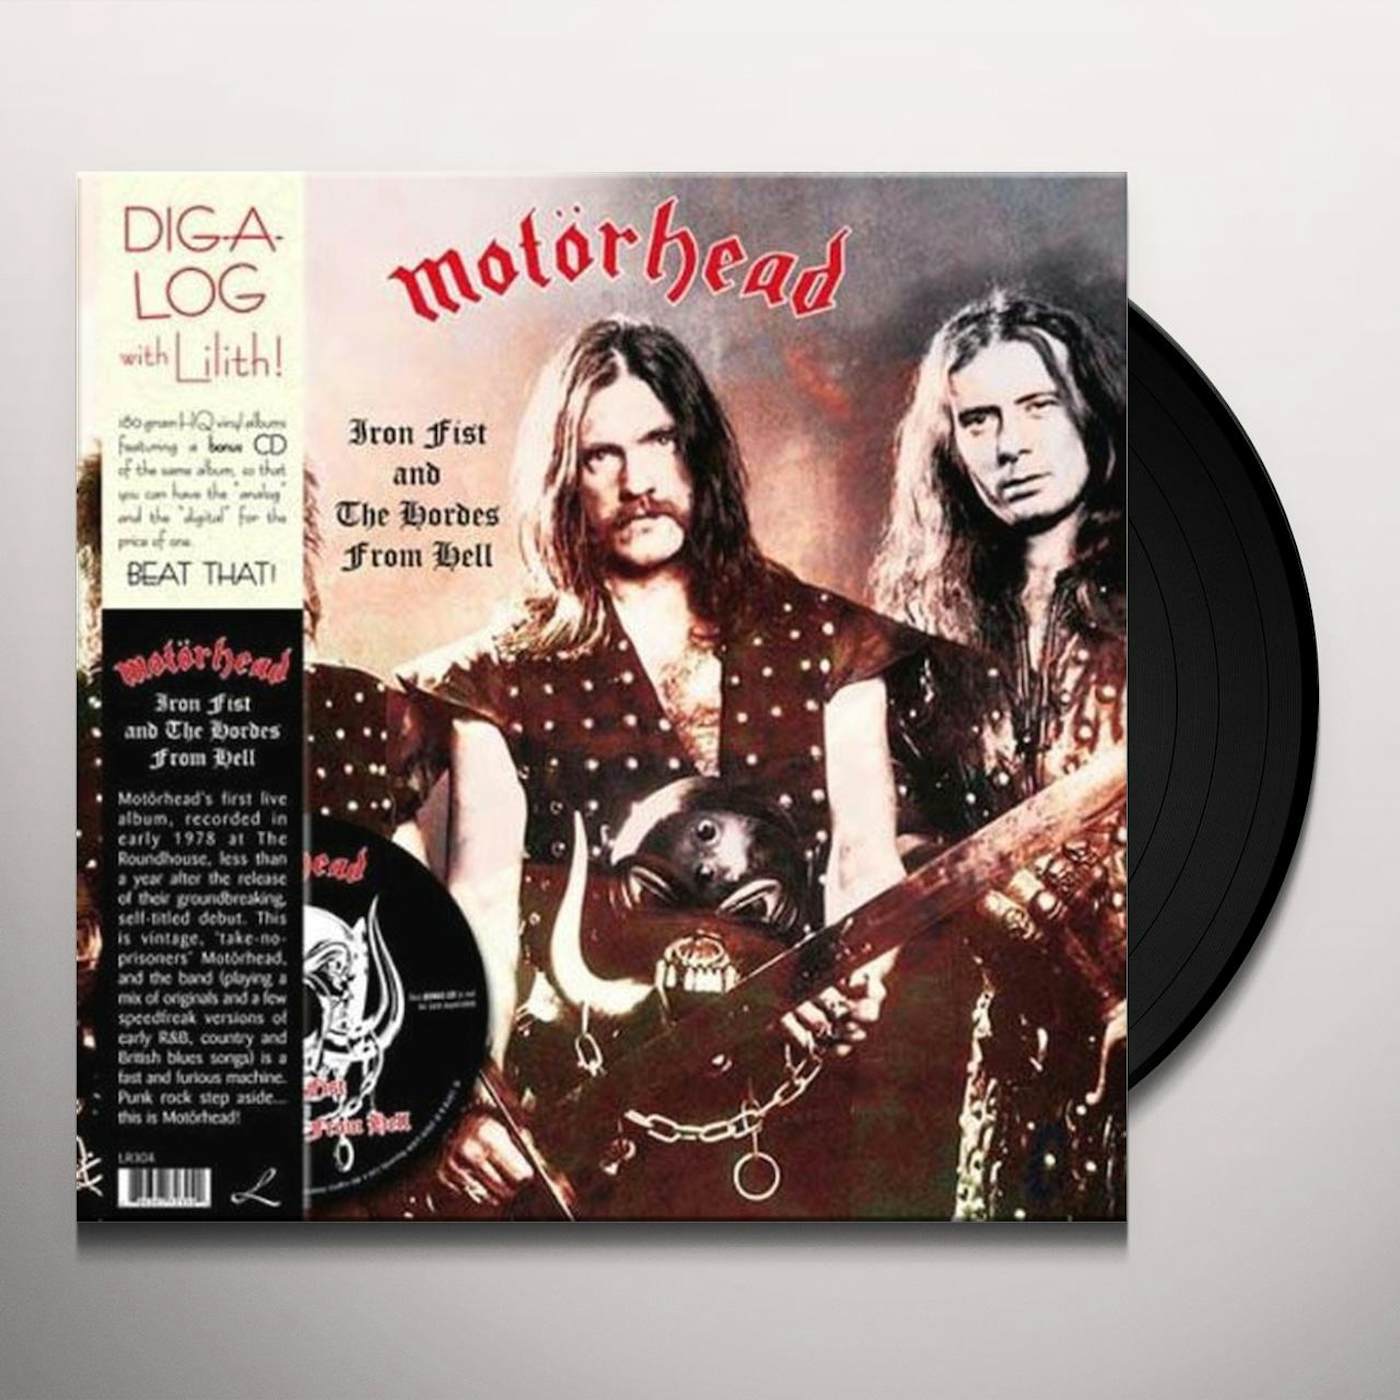 Motörhead Iron Fist Vinyl Record